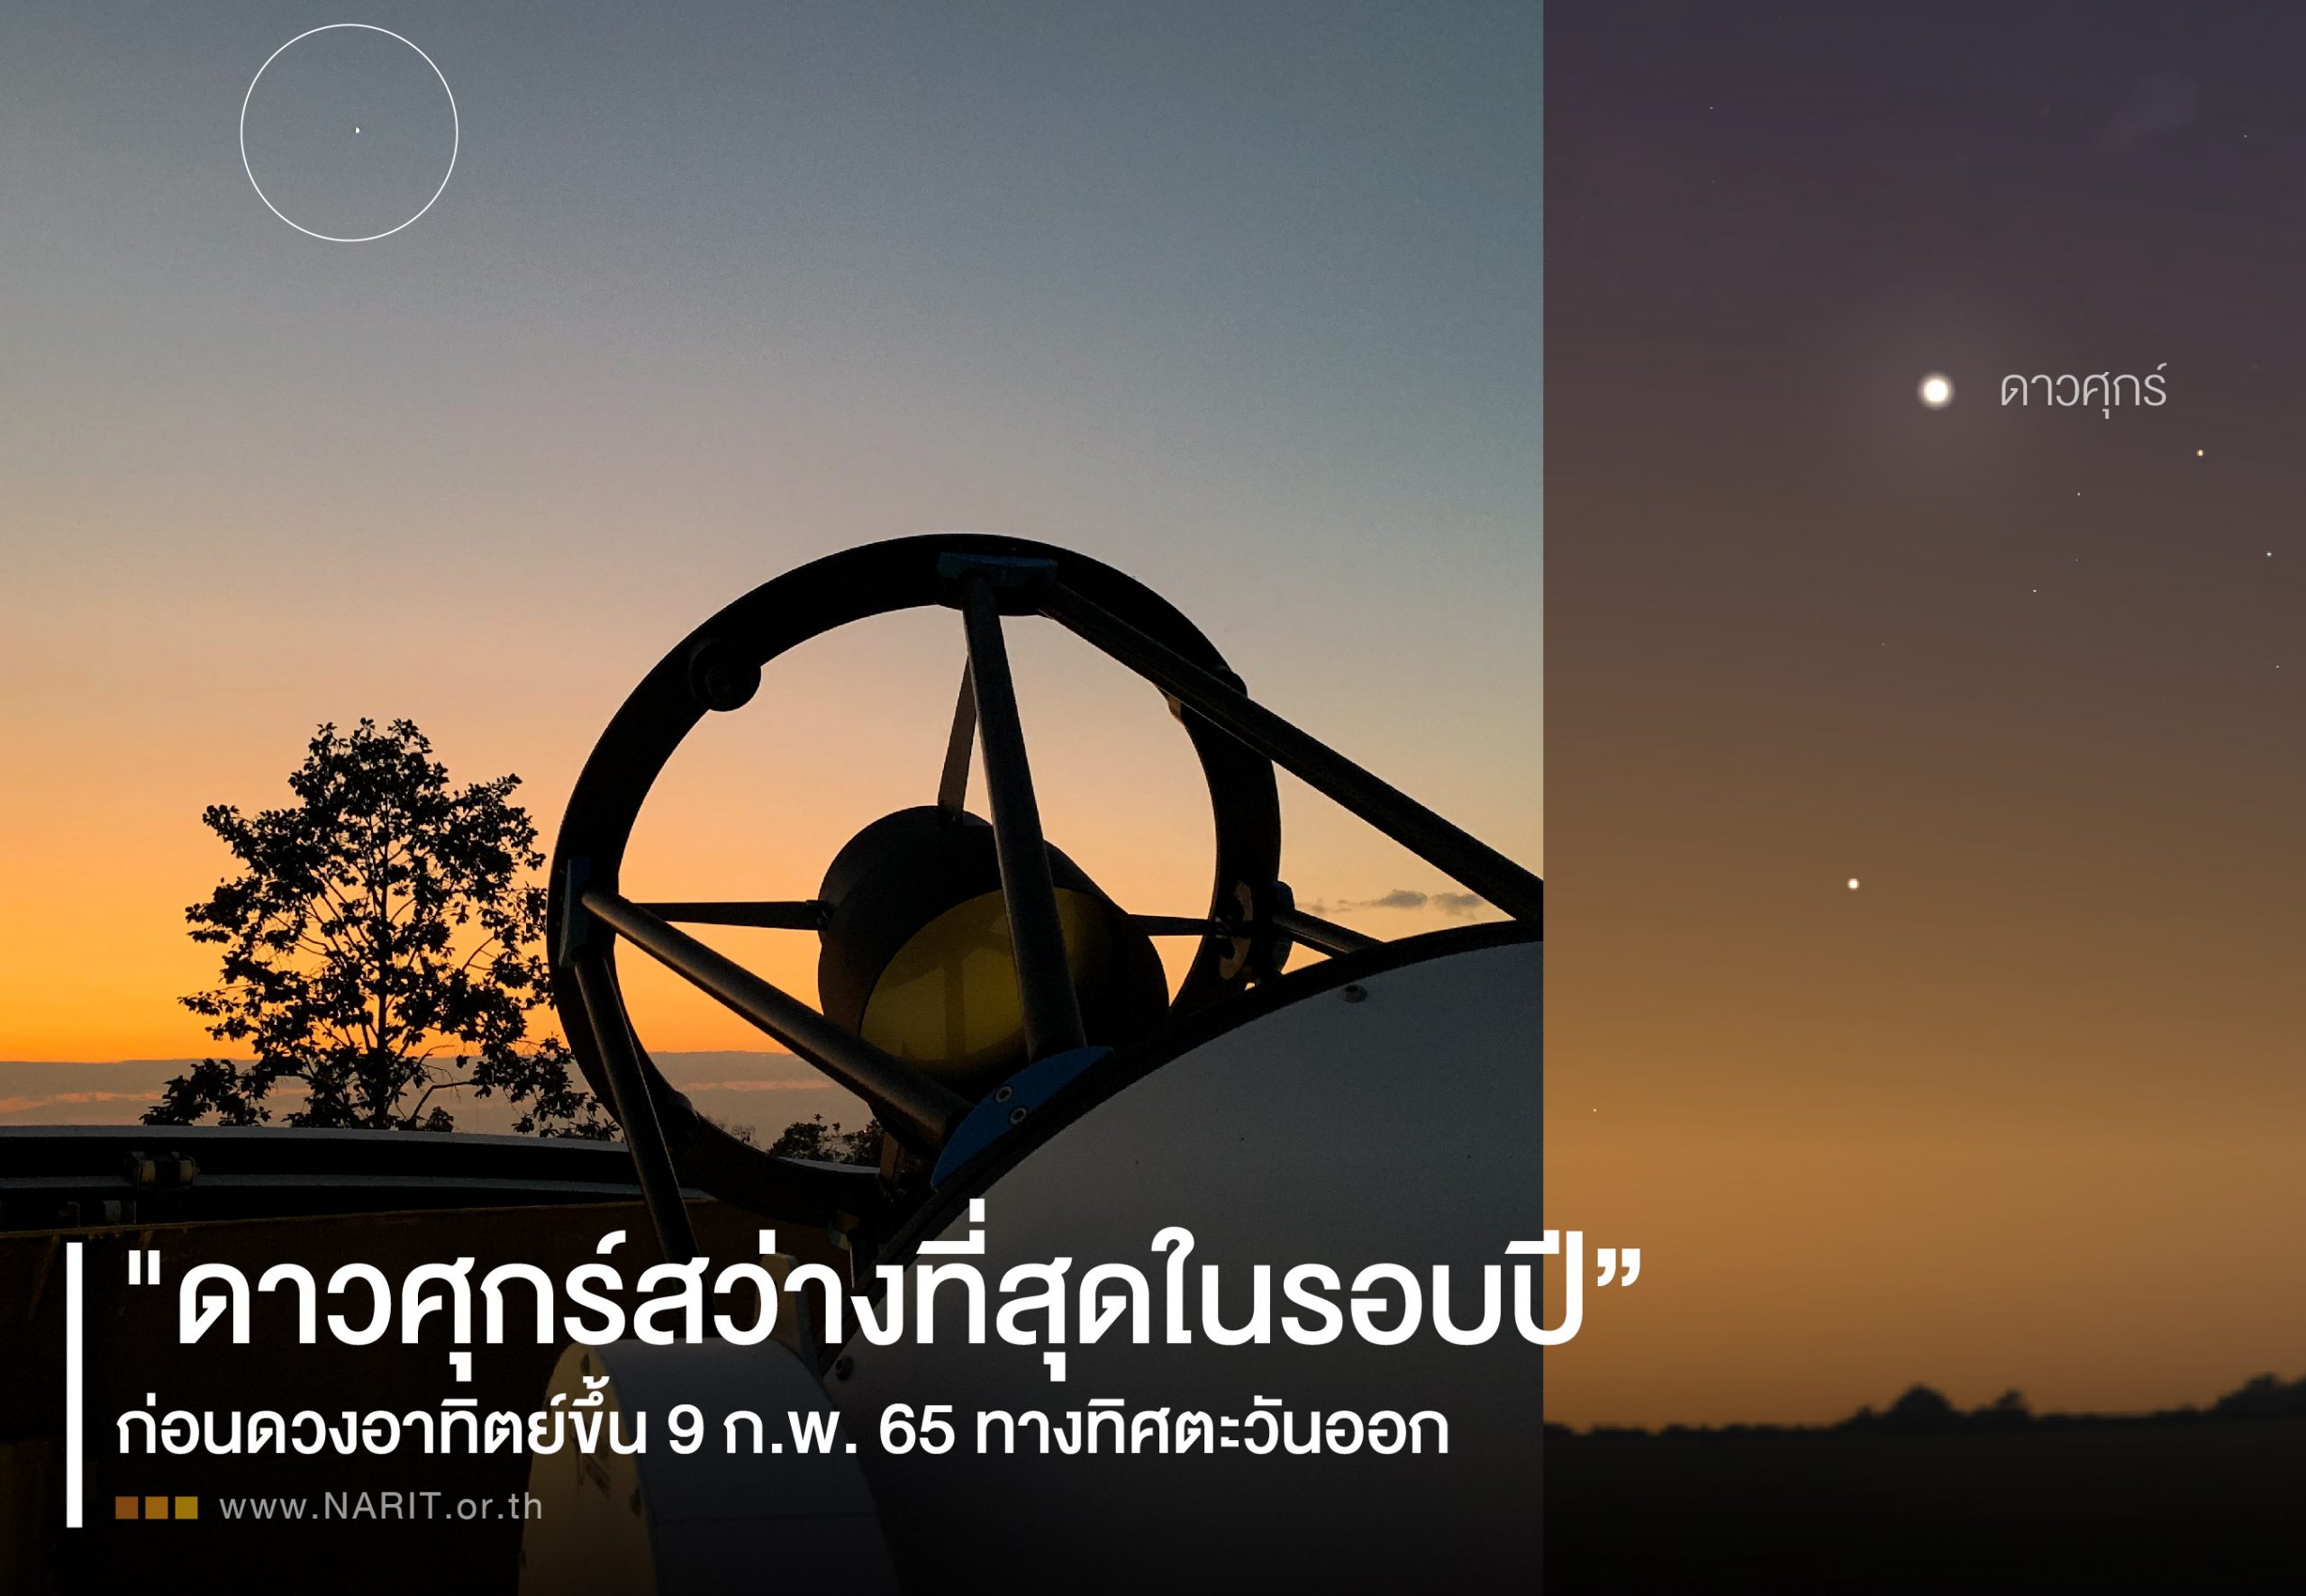 ชวนชม "ดาวศุกร์สว่างที่สุดในรอบปี” รุ่งเช้า 9 กุมภาพันธ์ 2565